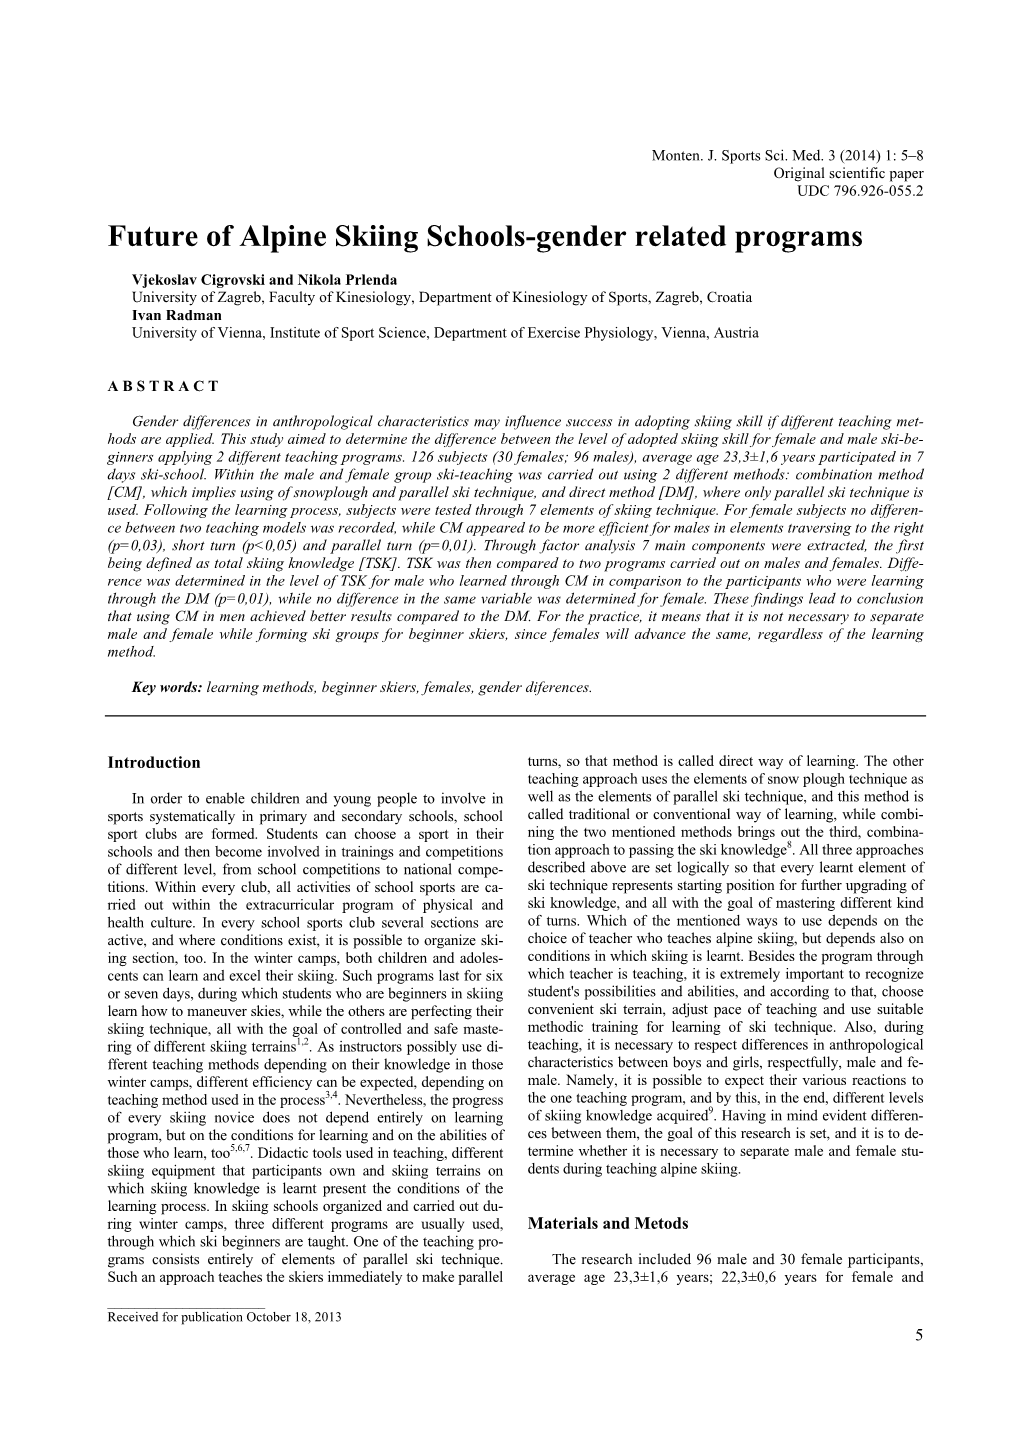 Future of Alpine Skiing Schools-Gender Related Programs